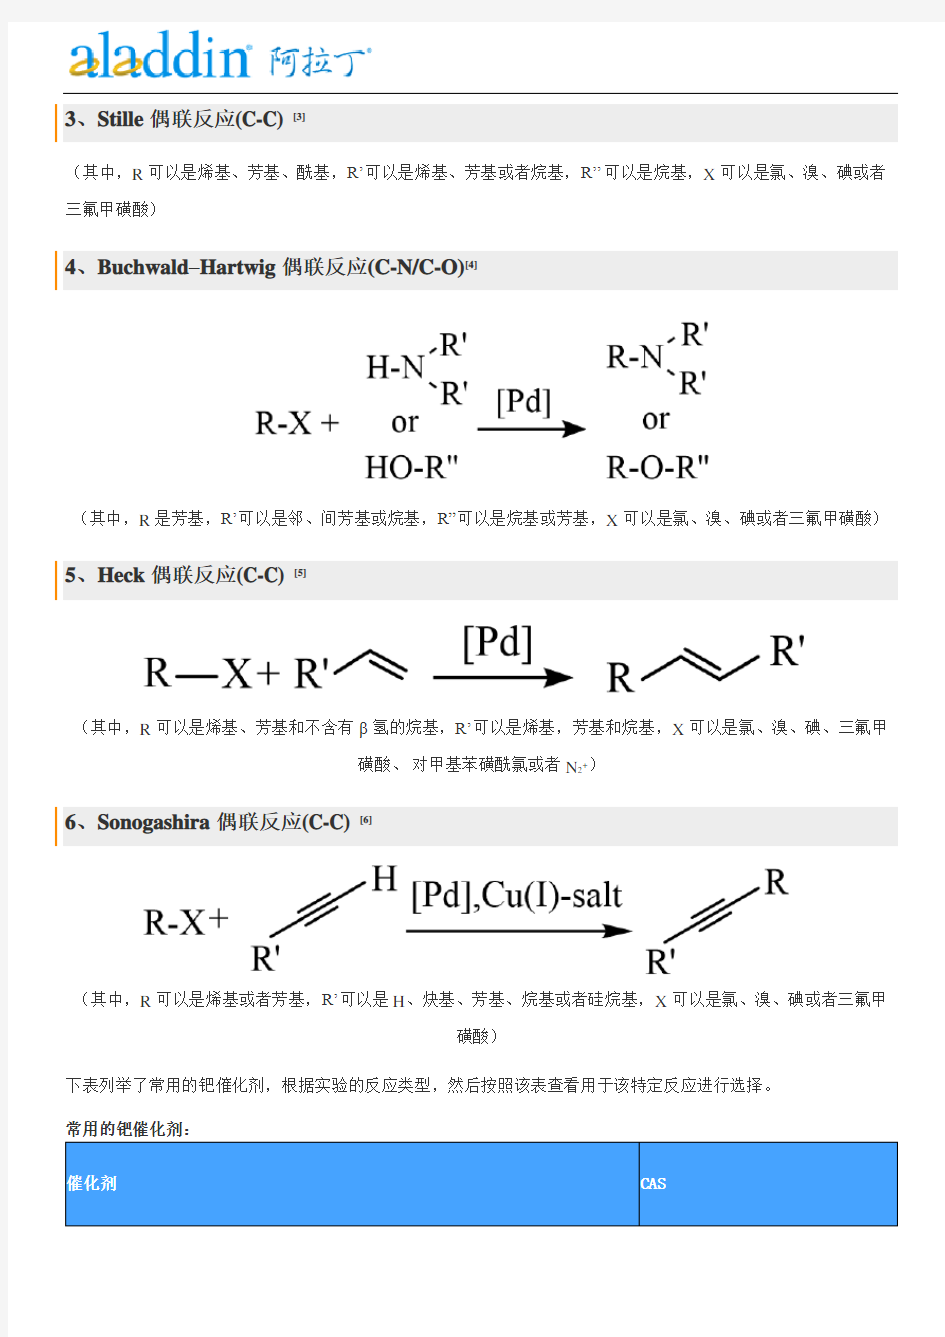 贵金属钯Pd催化的偶联反应